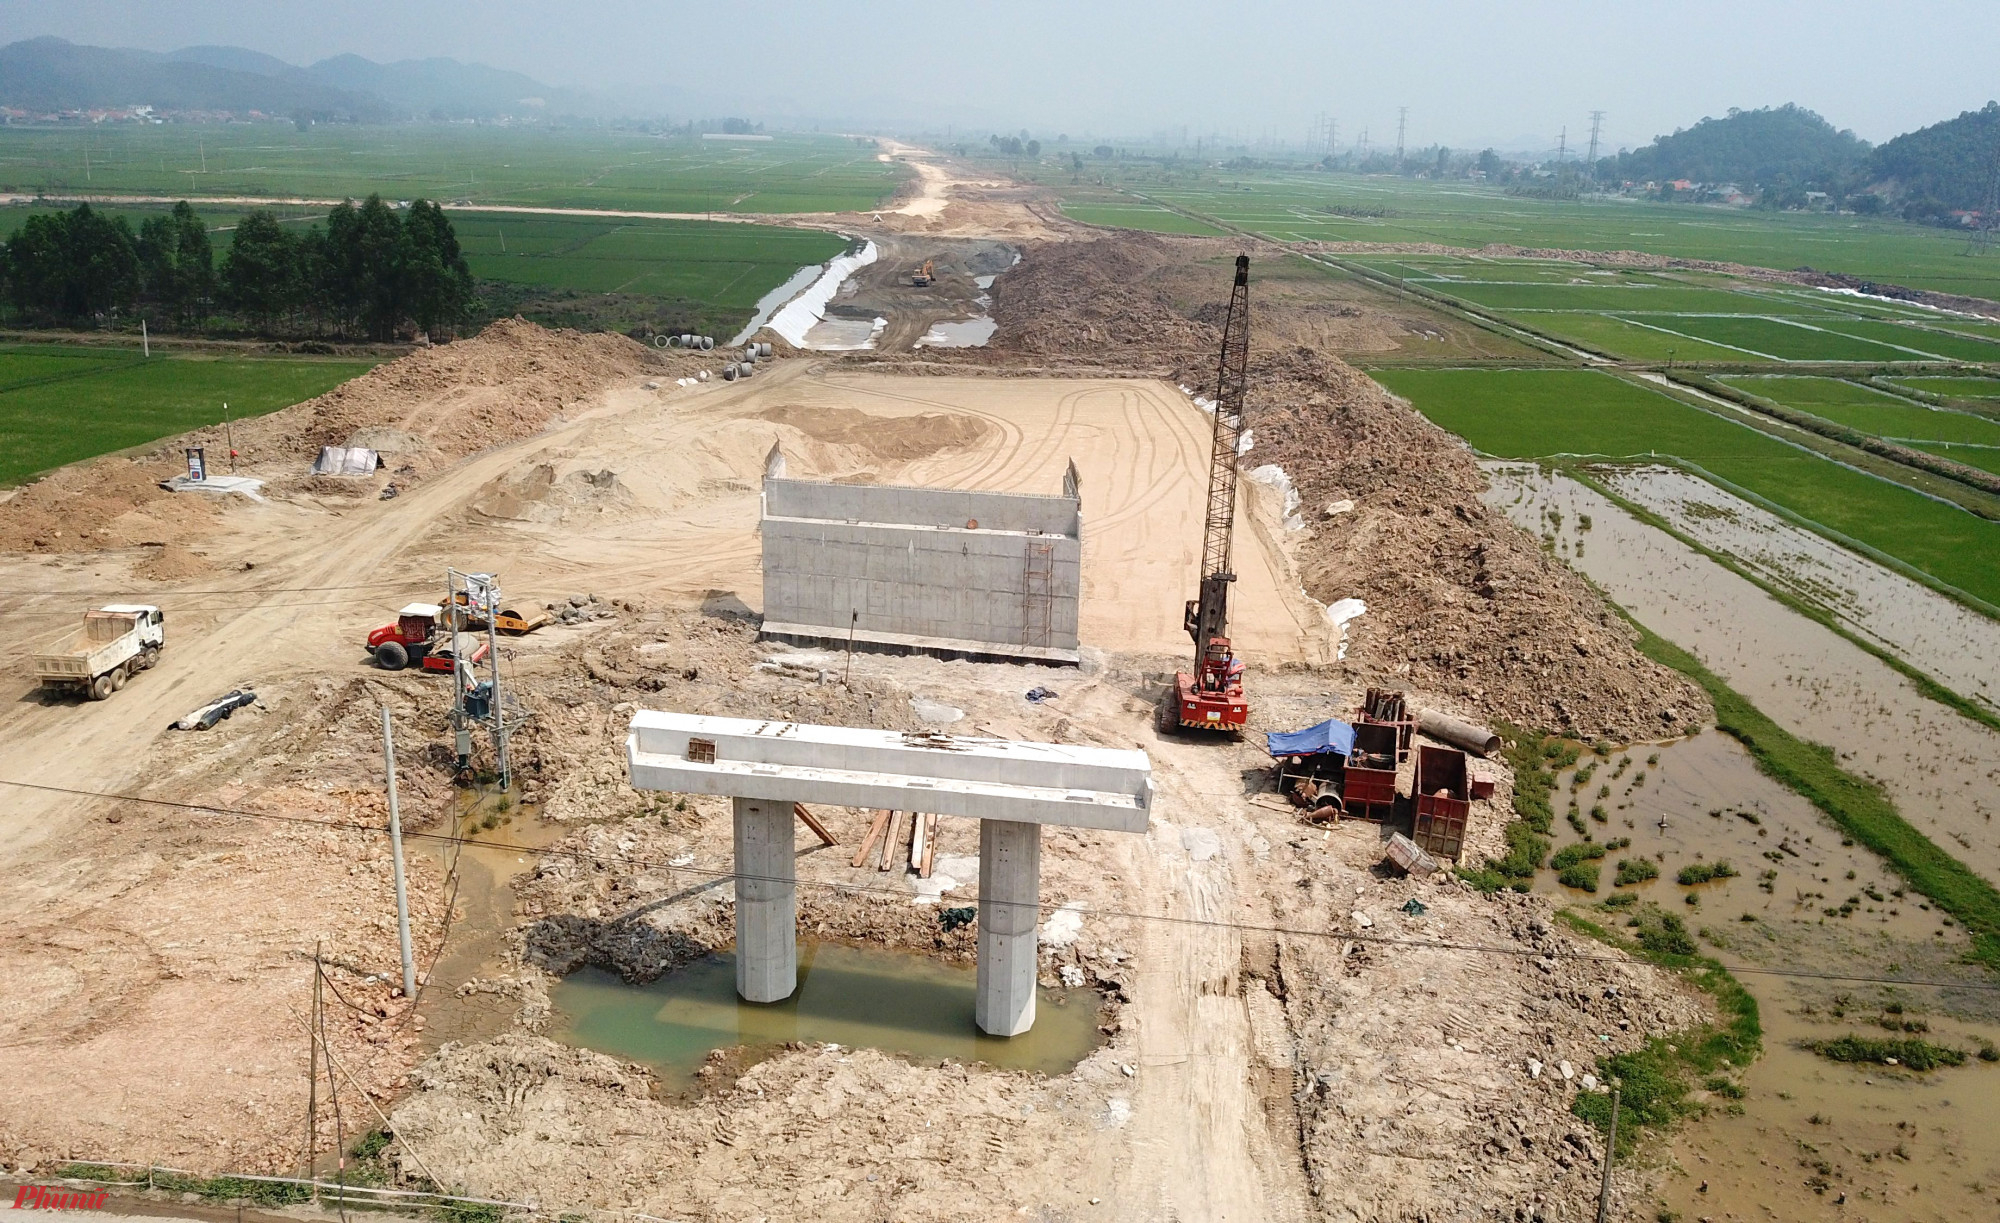 Dự án đầu tư xây dựng đường bộ cao tốc Bắc Nam phía Đông giai đoạn 2017 - 2020 đi qua tỉnh Nghệ An dài 87,84km, thuộc 2 dự án thành phần đoạn Nghi Sơn - Diễn Châu và dự án thành phần đoạn Diễn Châu - Bãi Vọt do Ban Quản lý dự án 6 (Bộ GTVT) làm đại diện chủ đầu tư.